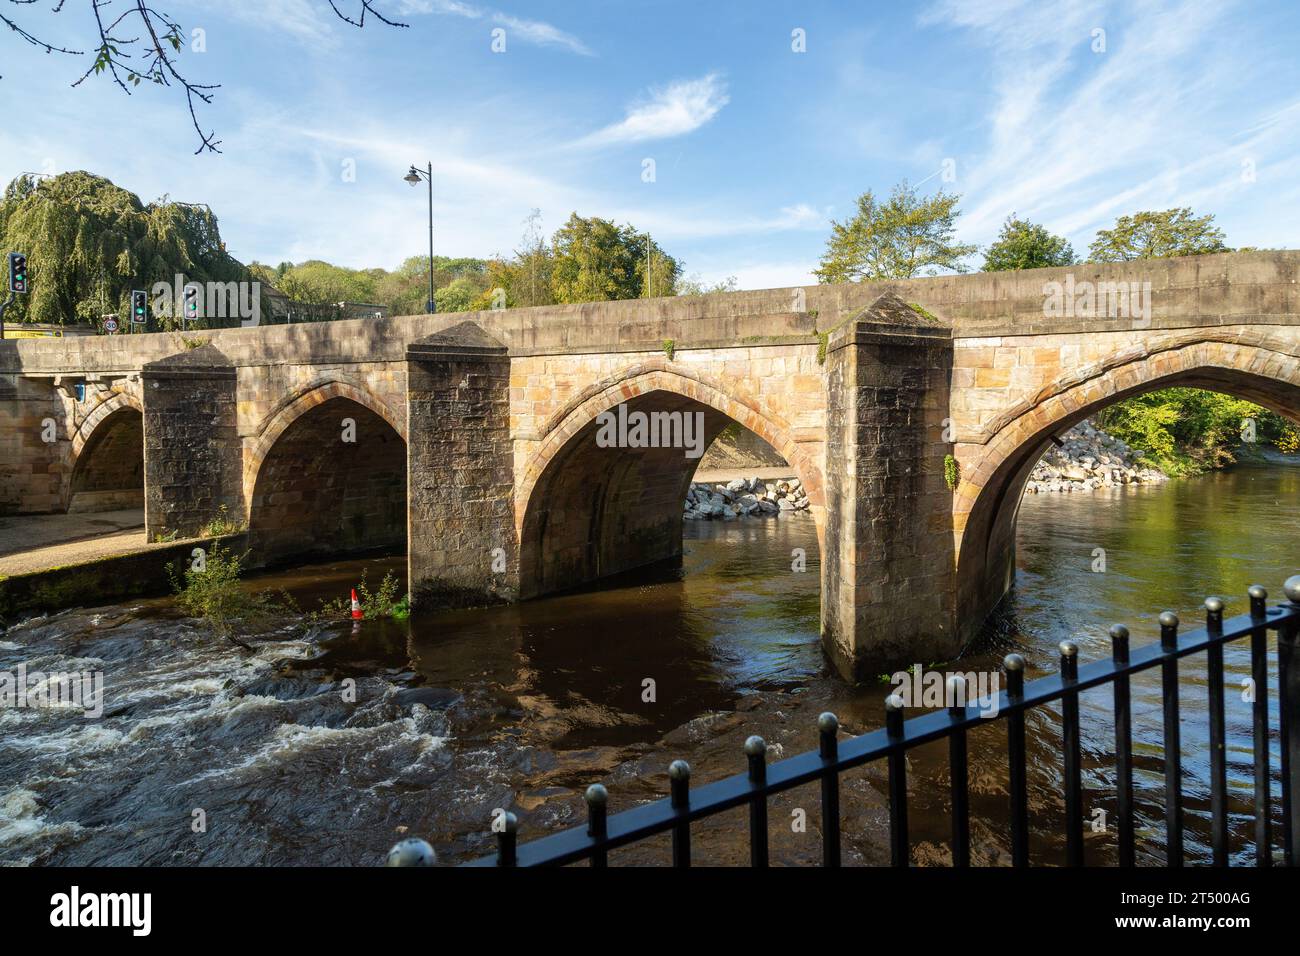 Matlock Bridge also known as Derwent Bridge, is a stone bridge spanning the River Derwent in Matlock town centre, Derbyshire, England Stock Photo